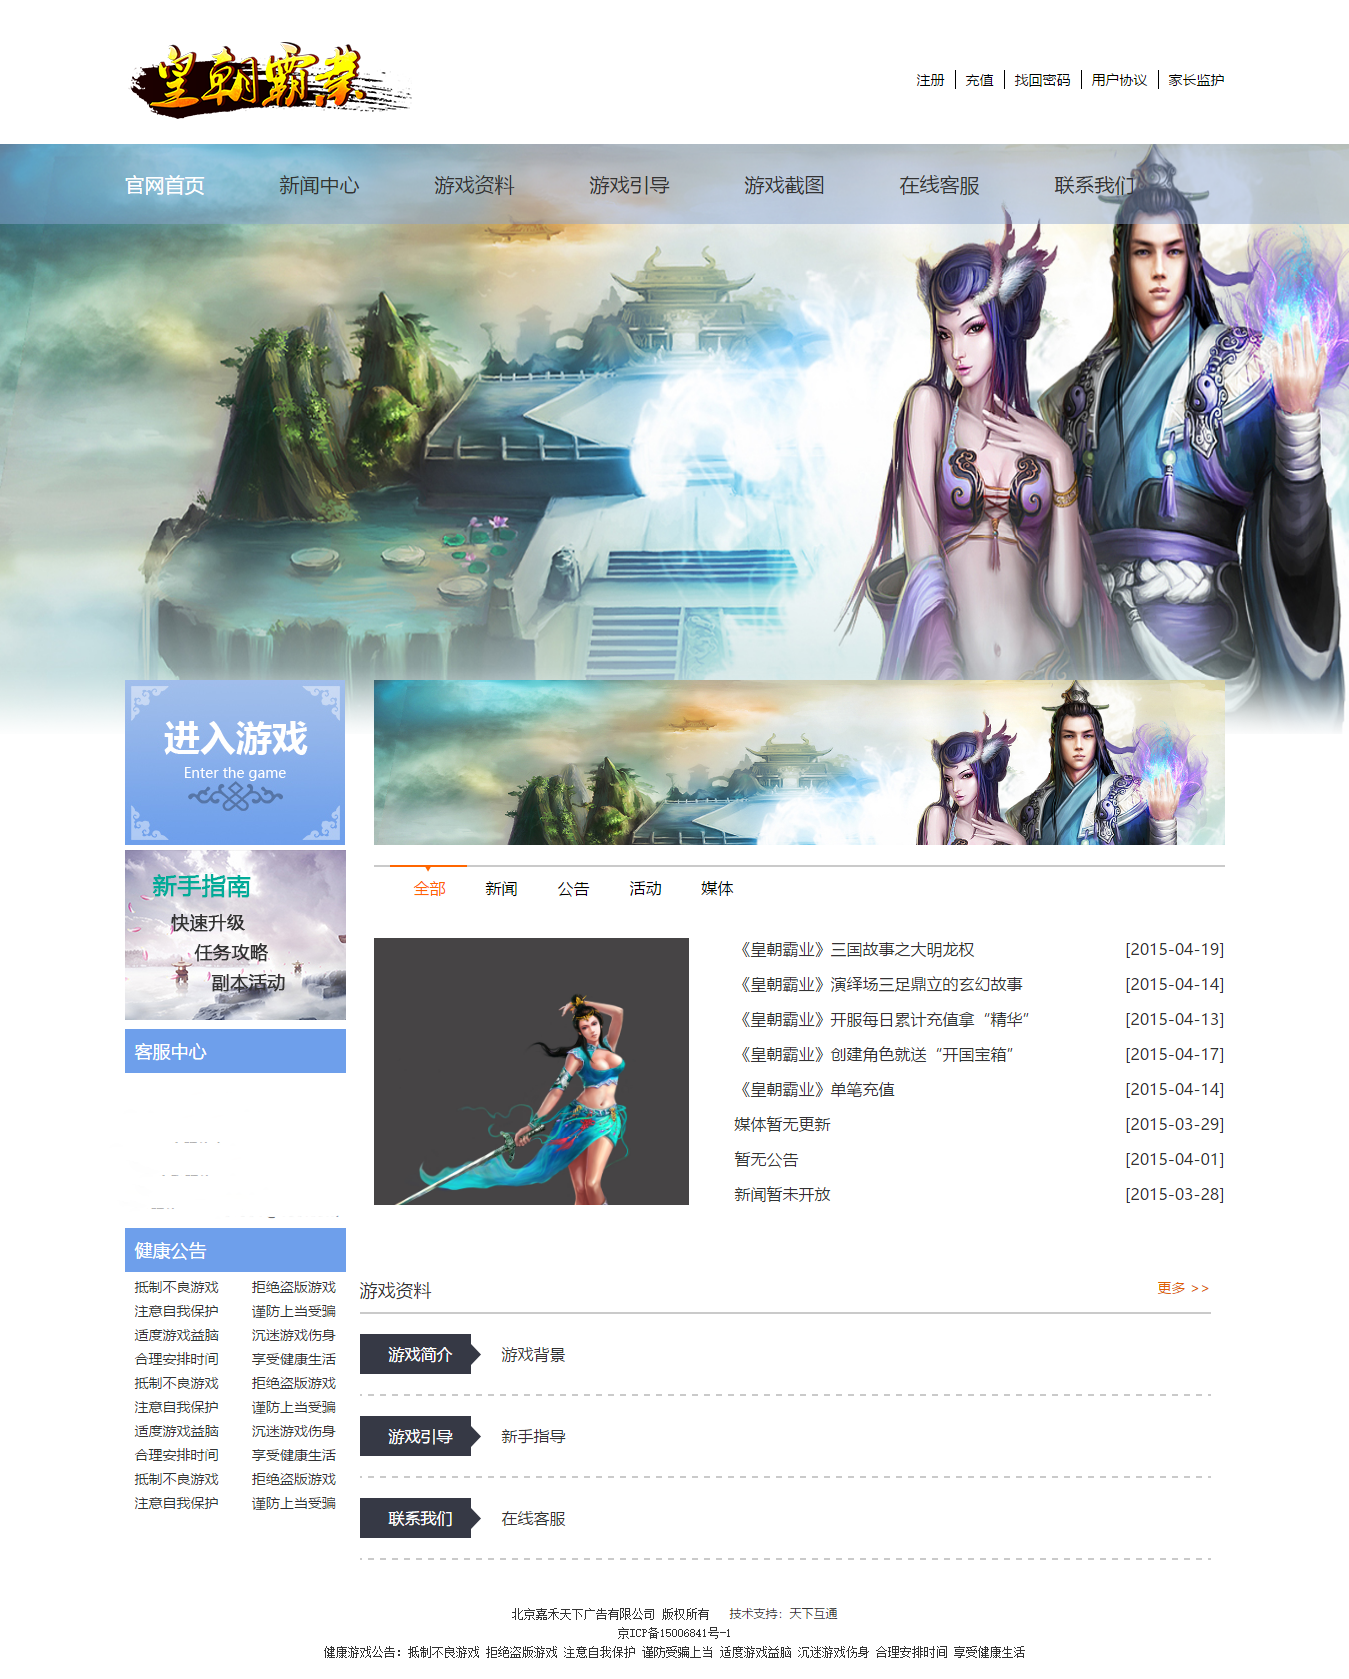 皇朝霸业游戏网站建设官网首页